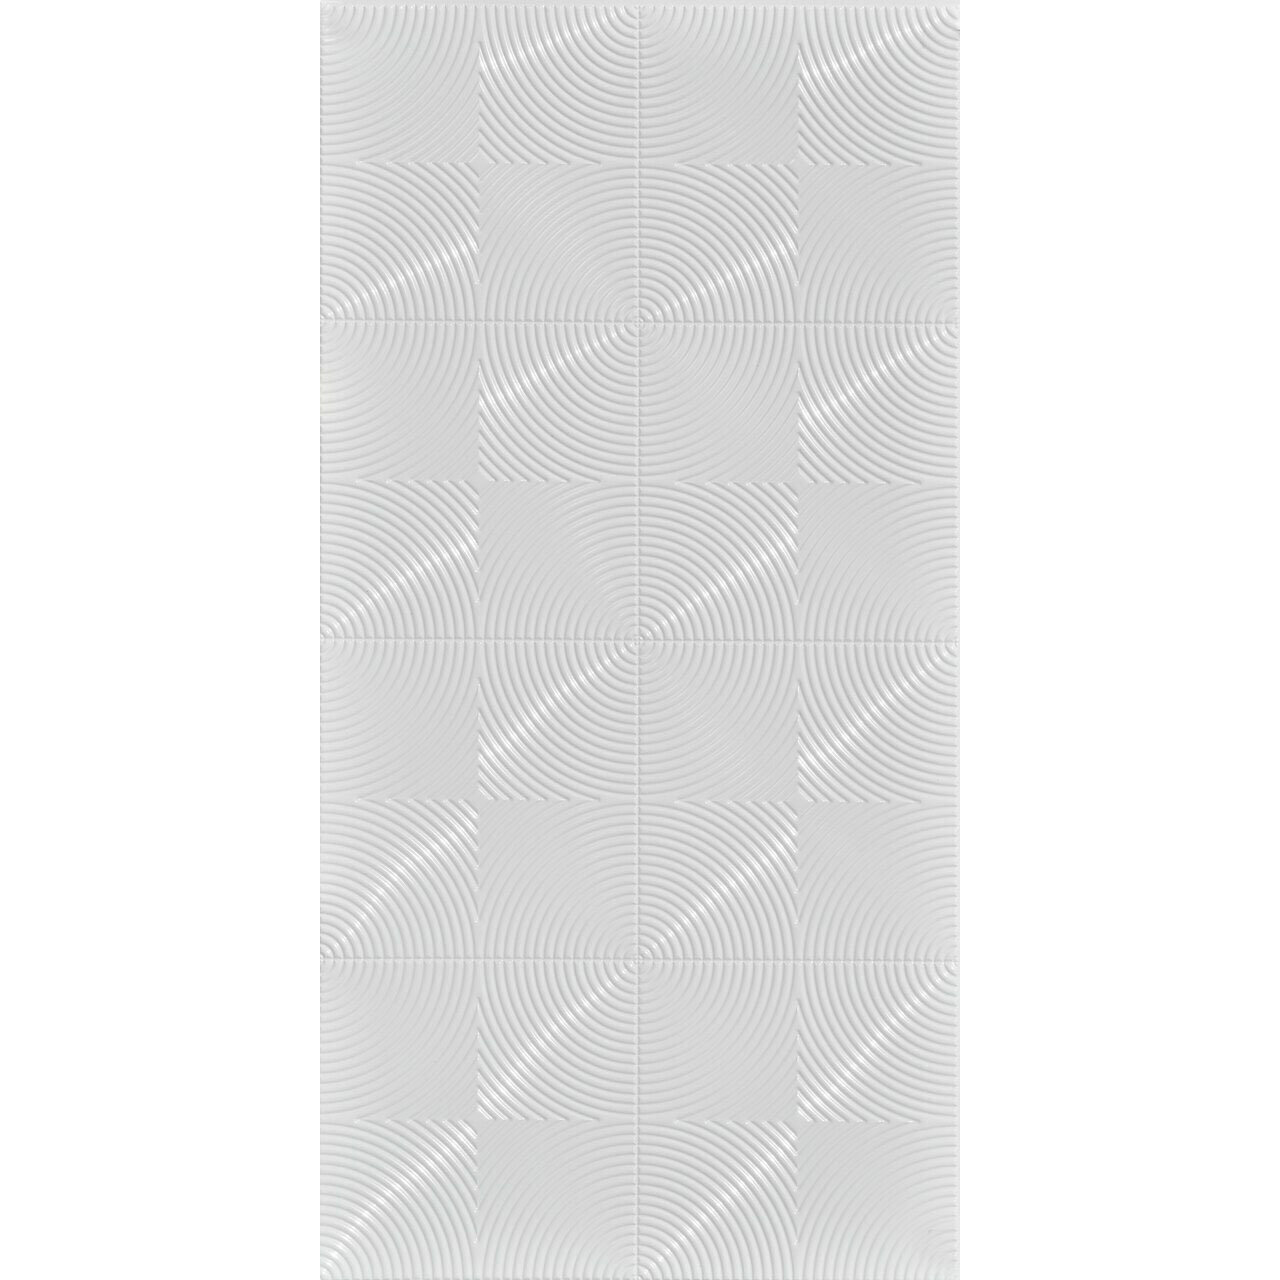 https://assets.wfcdn.com/im/16727250/compr-r85/2079/207987122/curvation-mirroflex-4ft-x-10ft-glue-up-3d-wall-panels-gloss-white-paintable.jpg